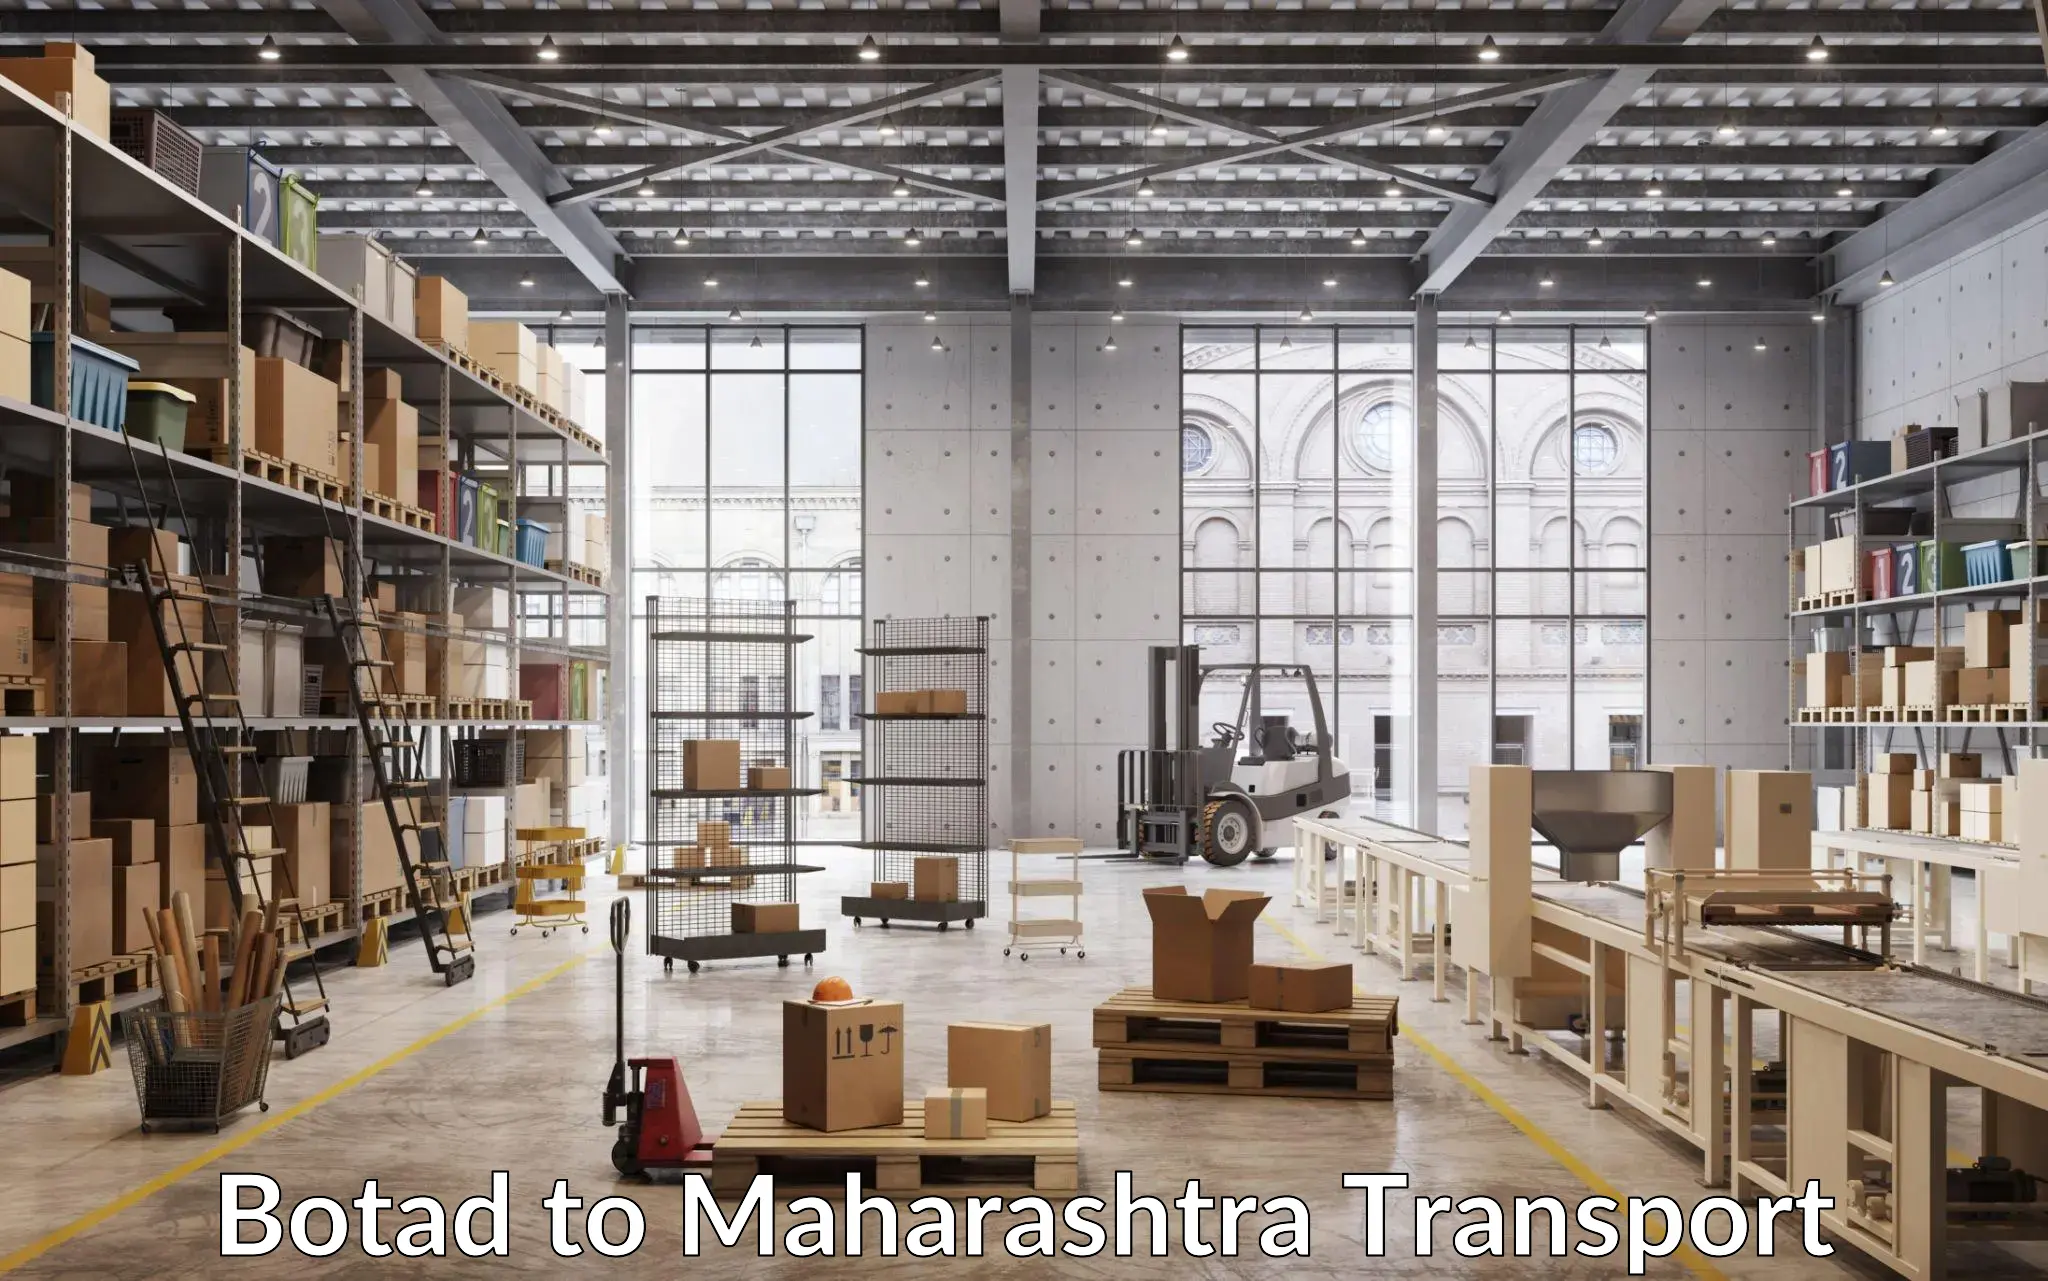 Commercial transport service Botad to Maharashtra